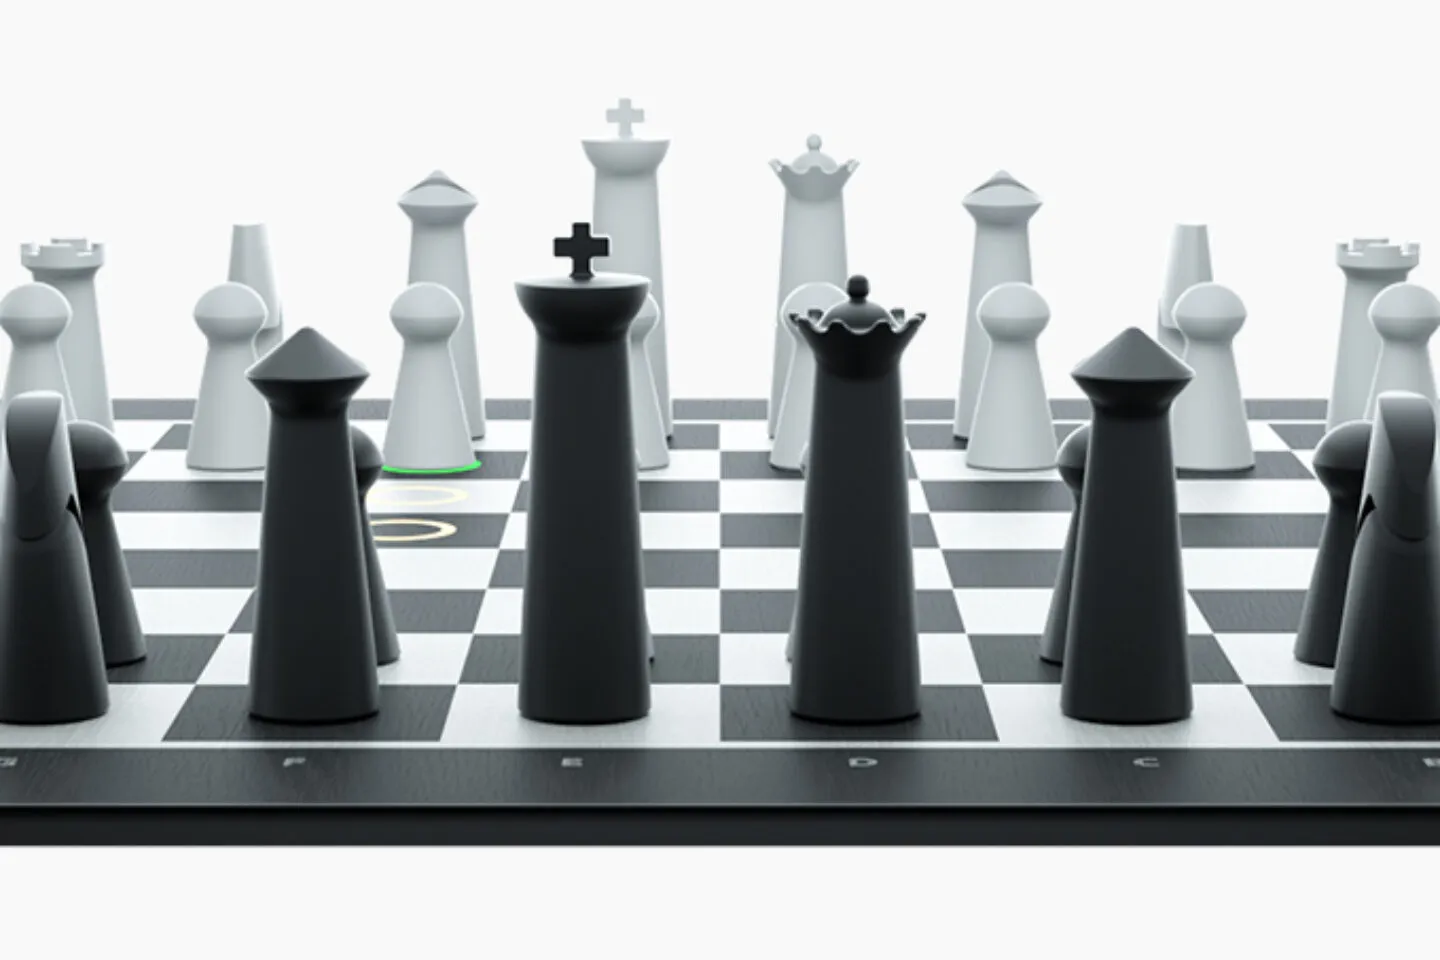 gochess chess board 1 1440x960 1